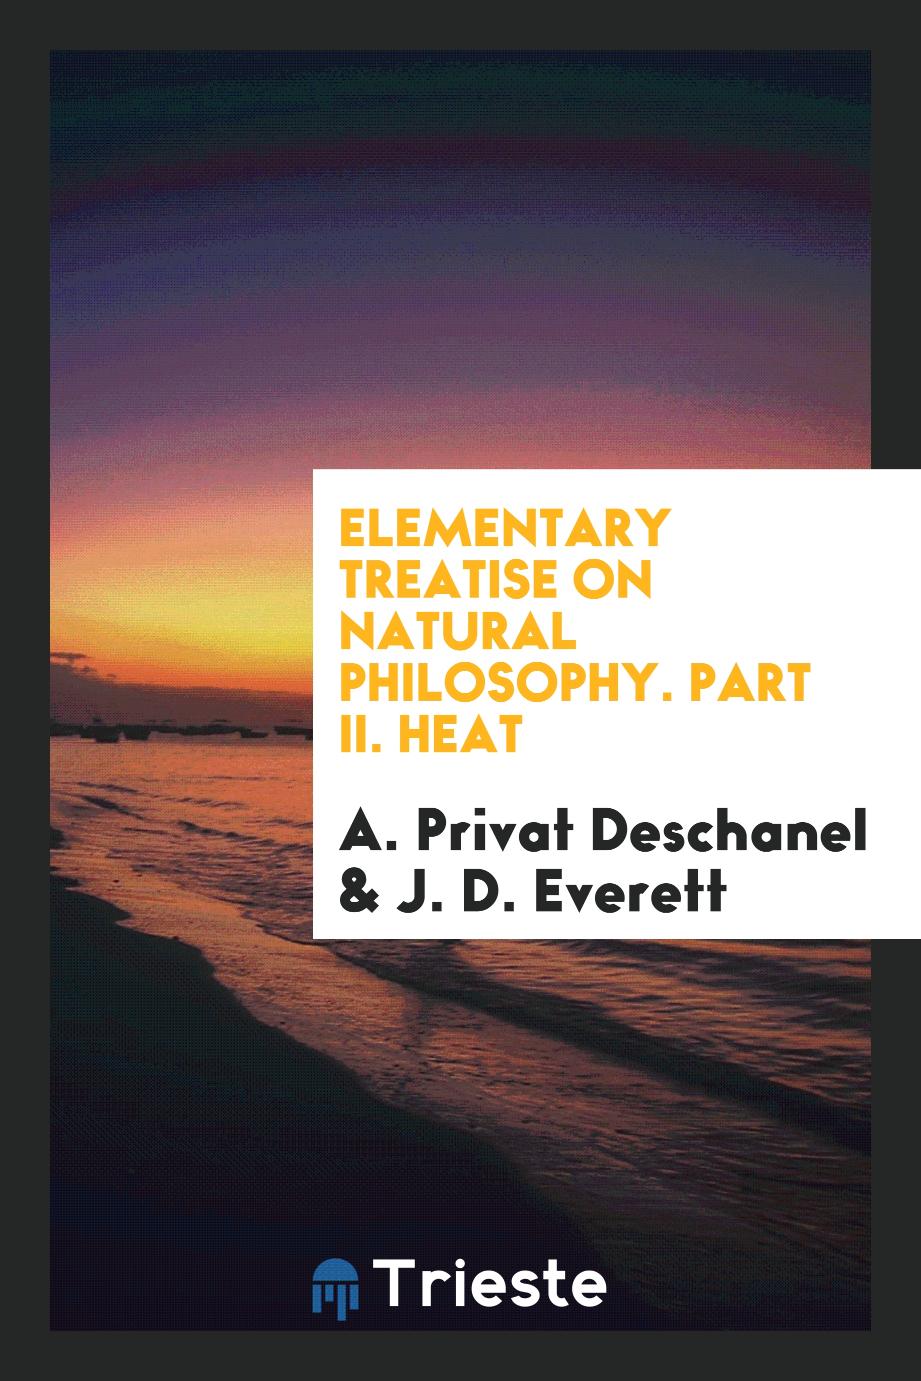 A. Privat Deschanel, J. D. Everett - Elementary Treatise on Natural Philosophy. Part II. Heat